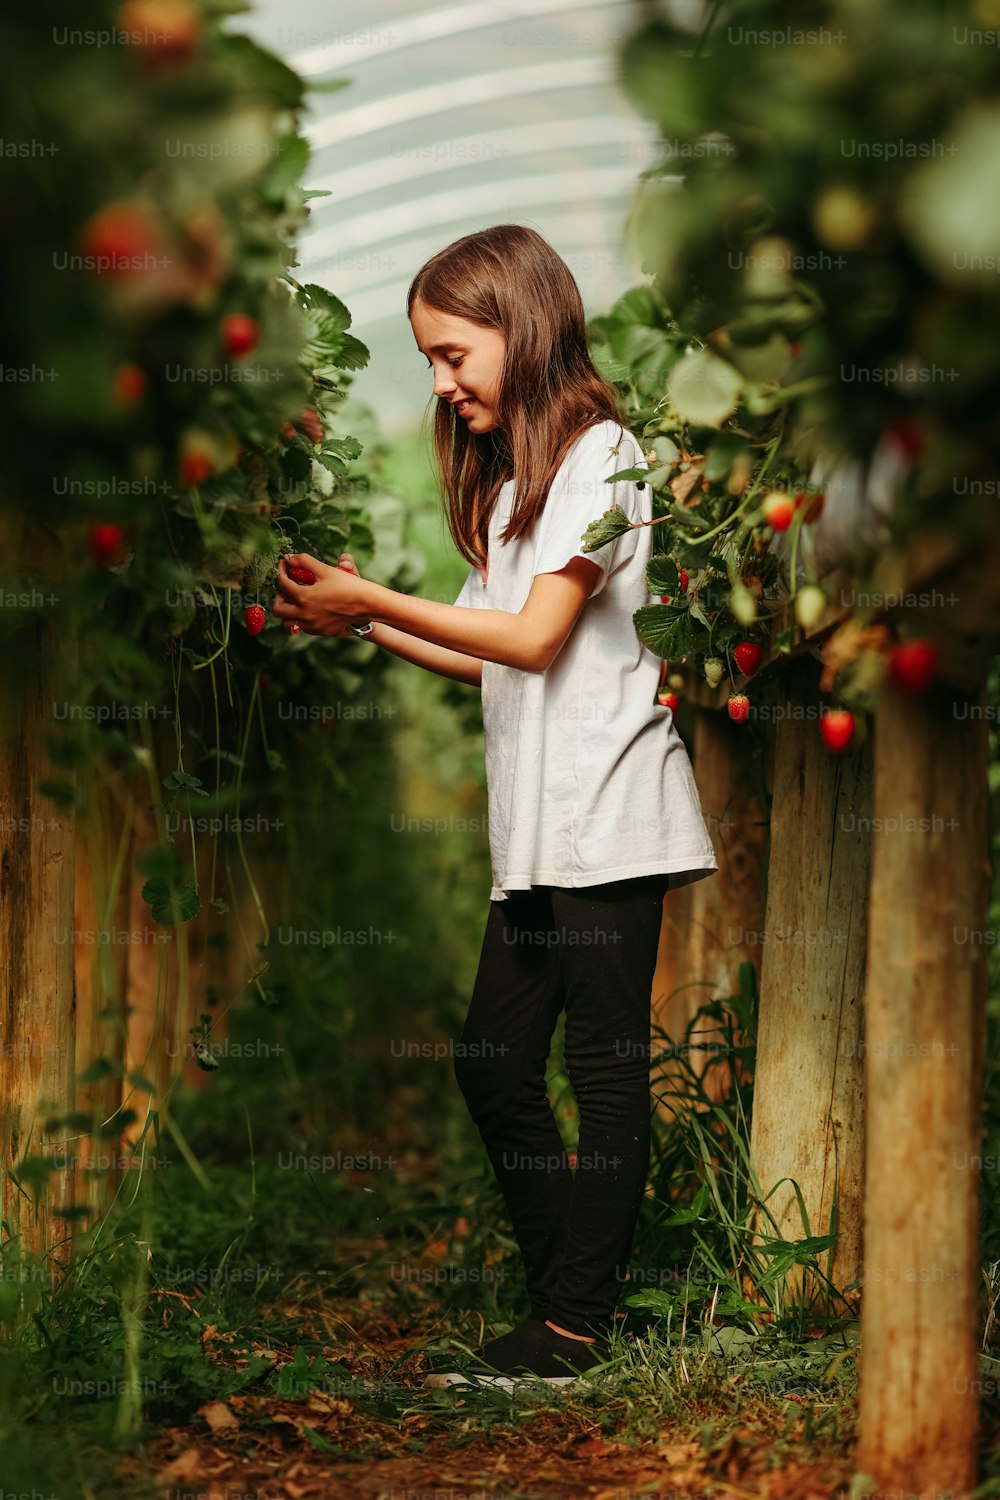 Una niña recogiendo bayas de un arbusto